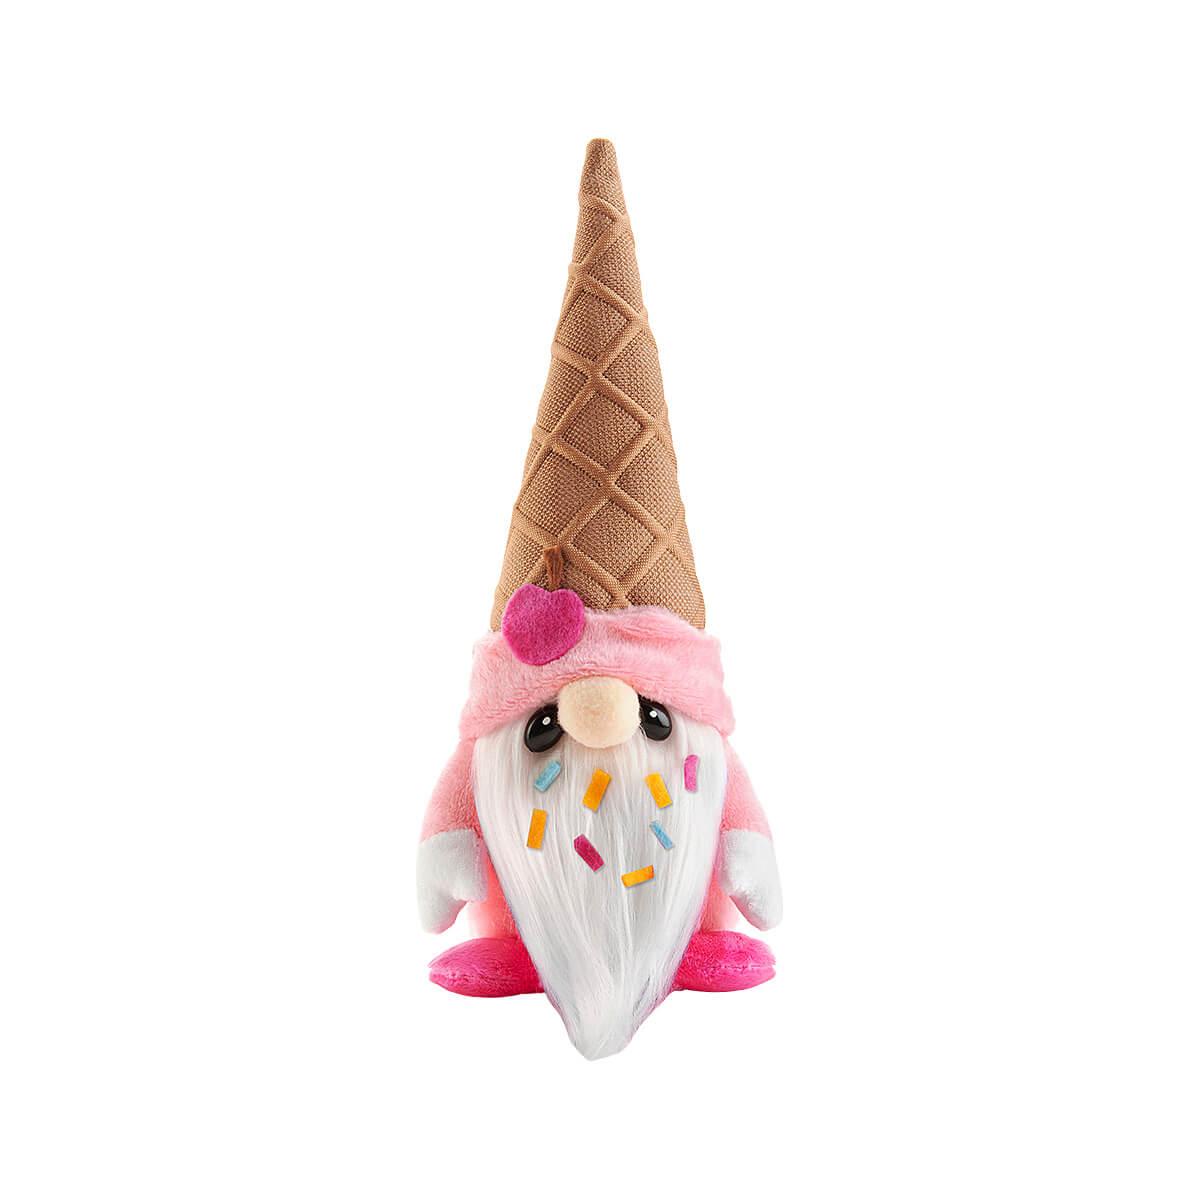  Sweetie Ice Cream Gnome Plush Toy